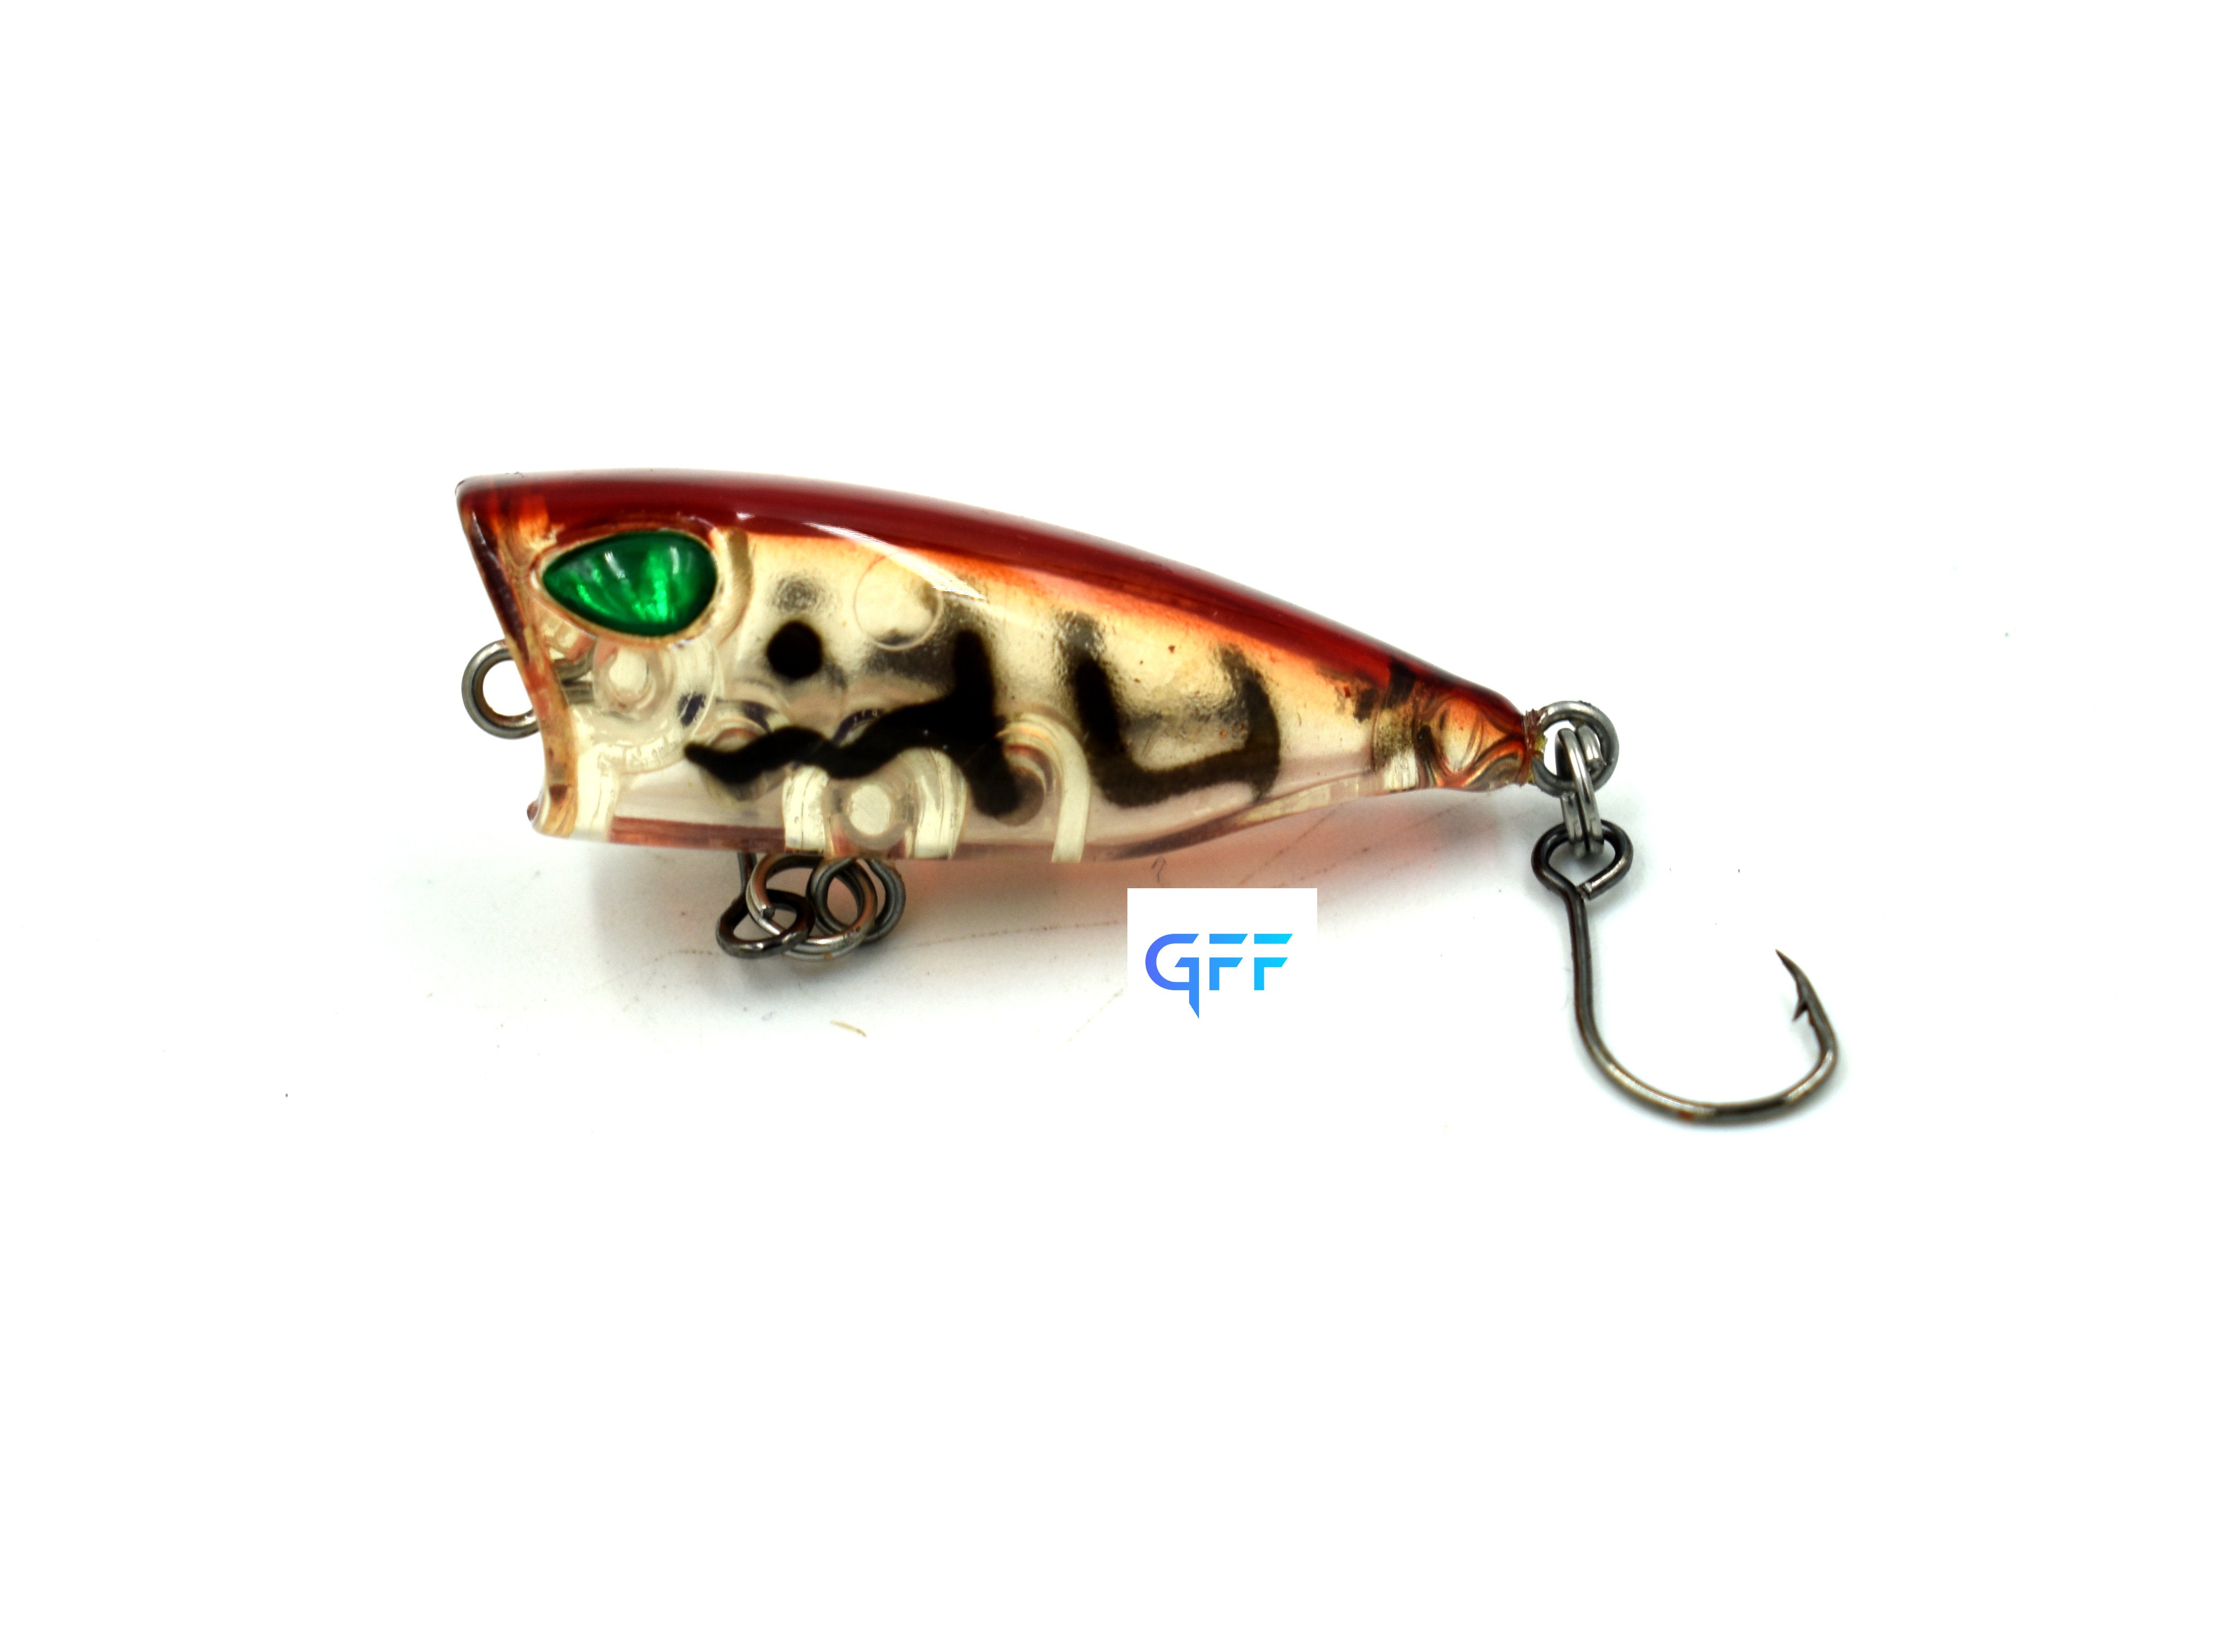 Micro popper lure 3cm/4g – GFF FISHING GEAR